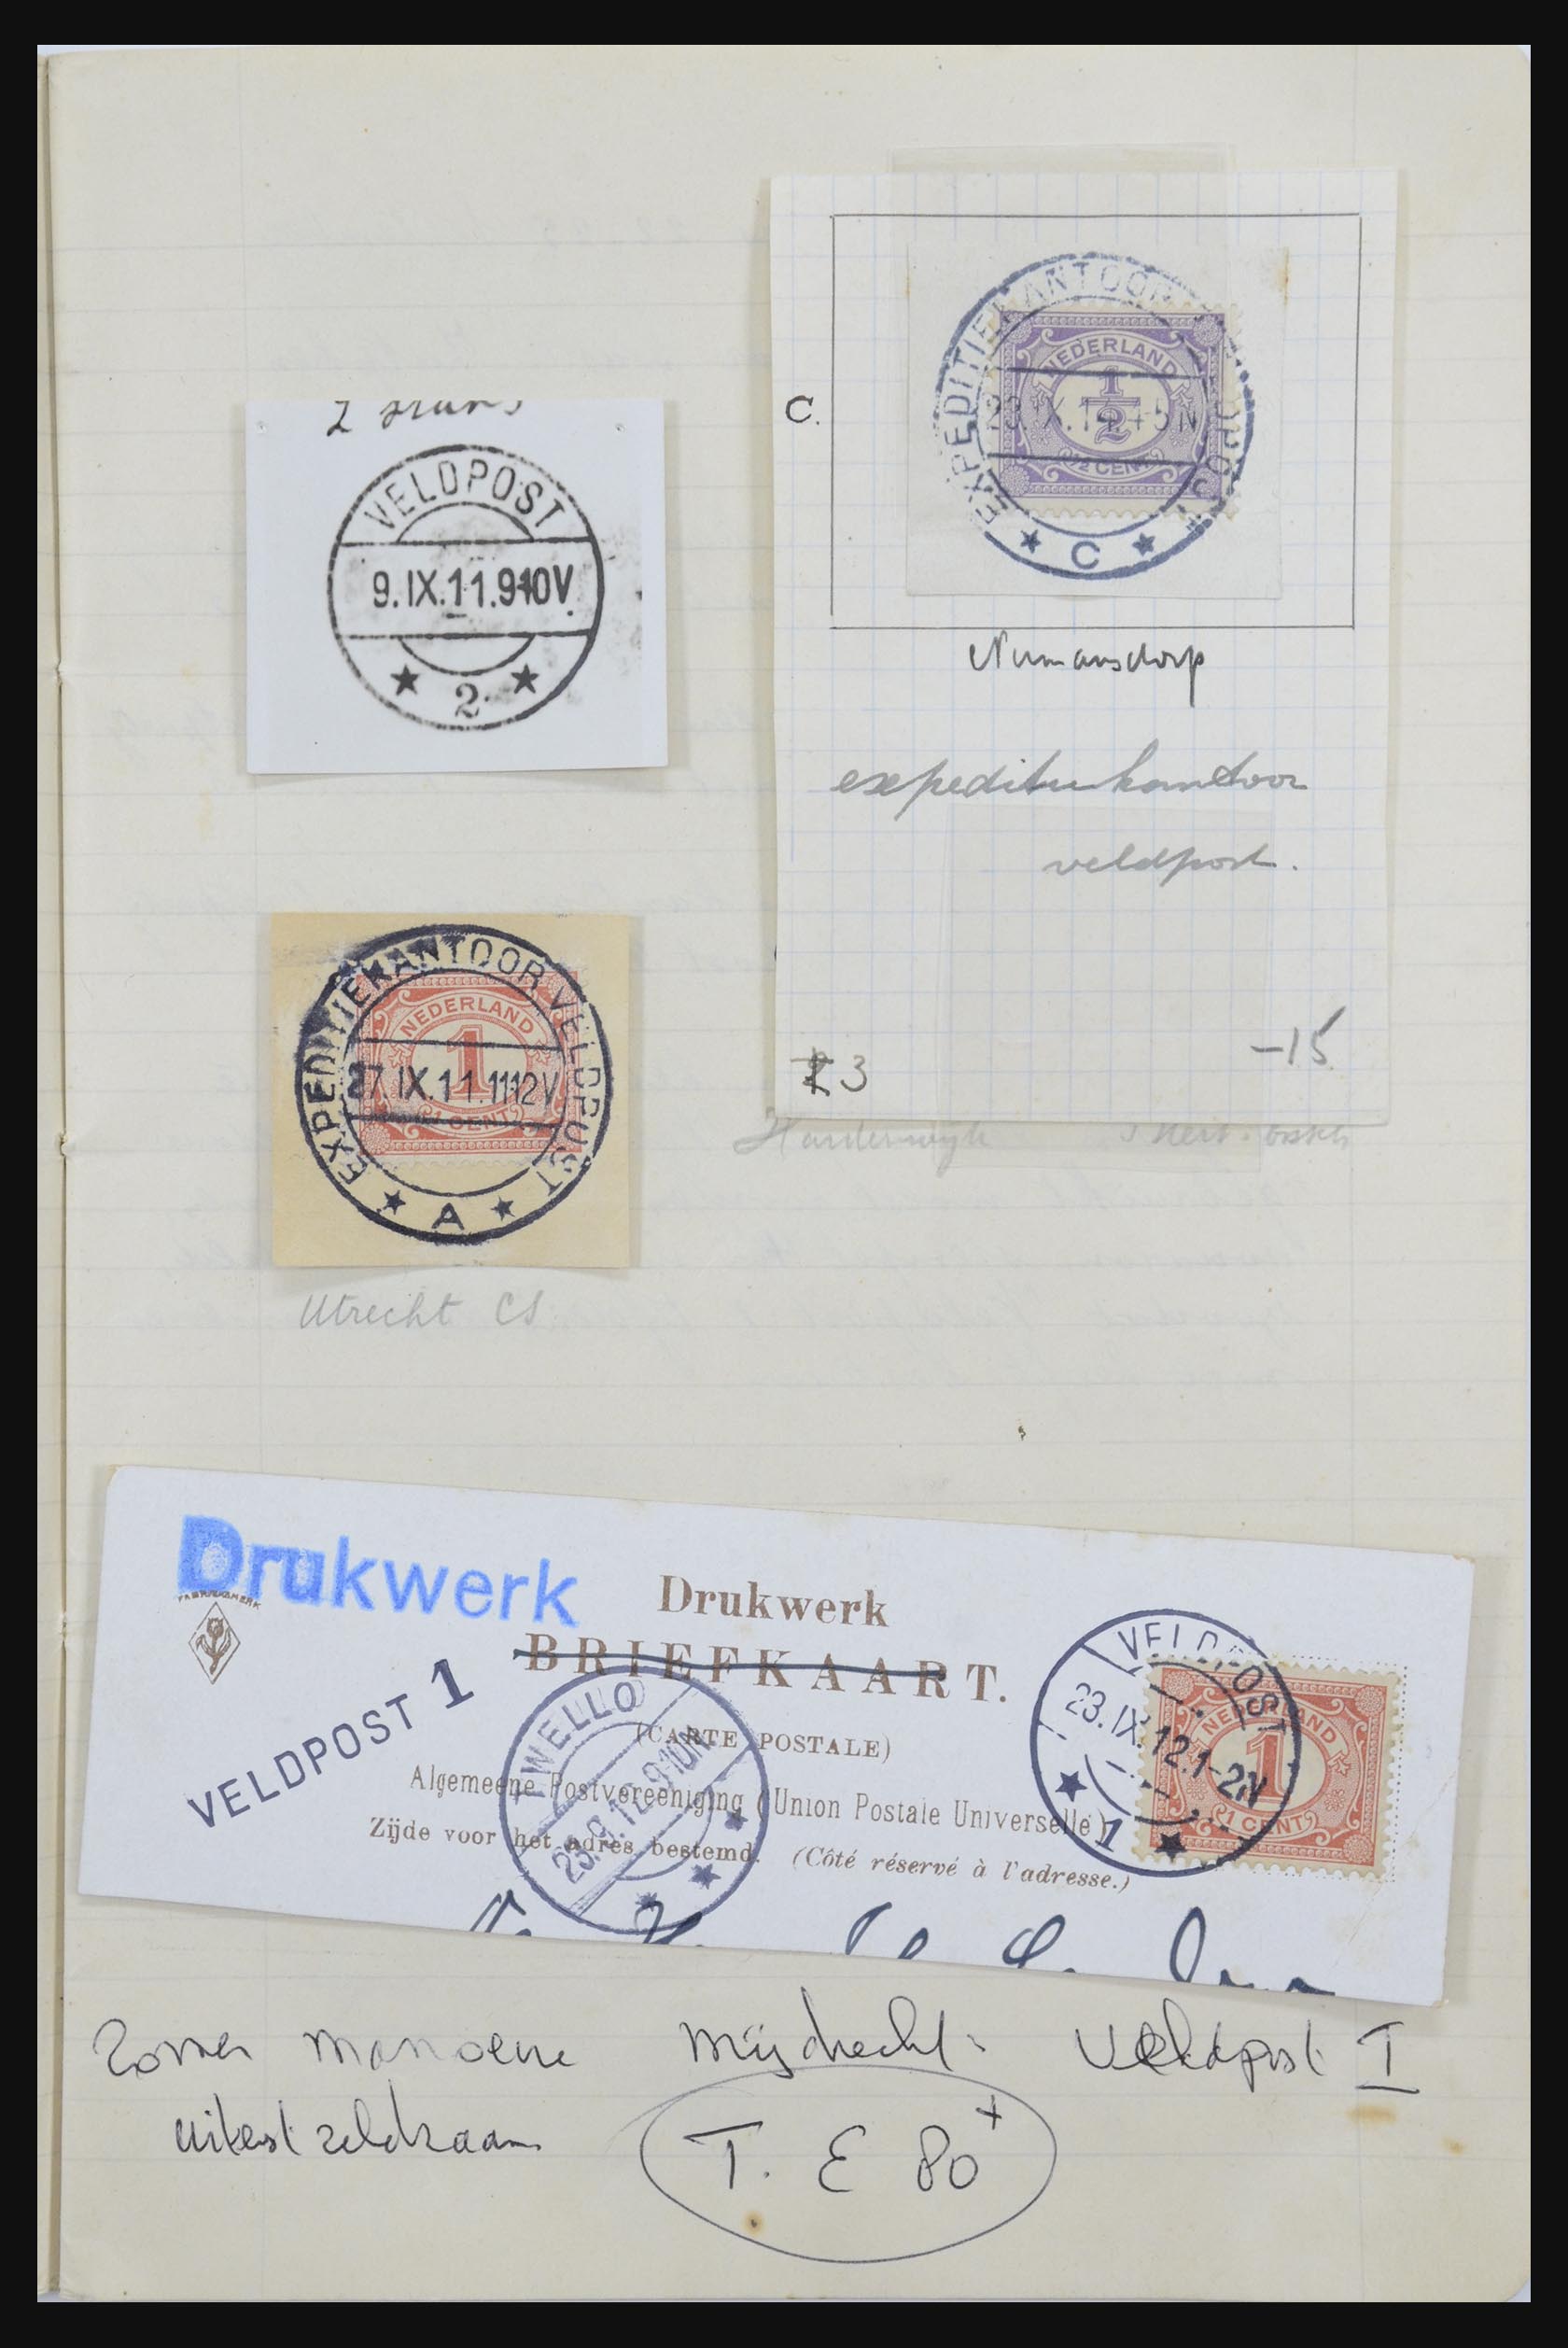 31976 004 - 31976 Netherlands cancels 1900-1940.